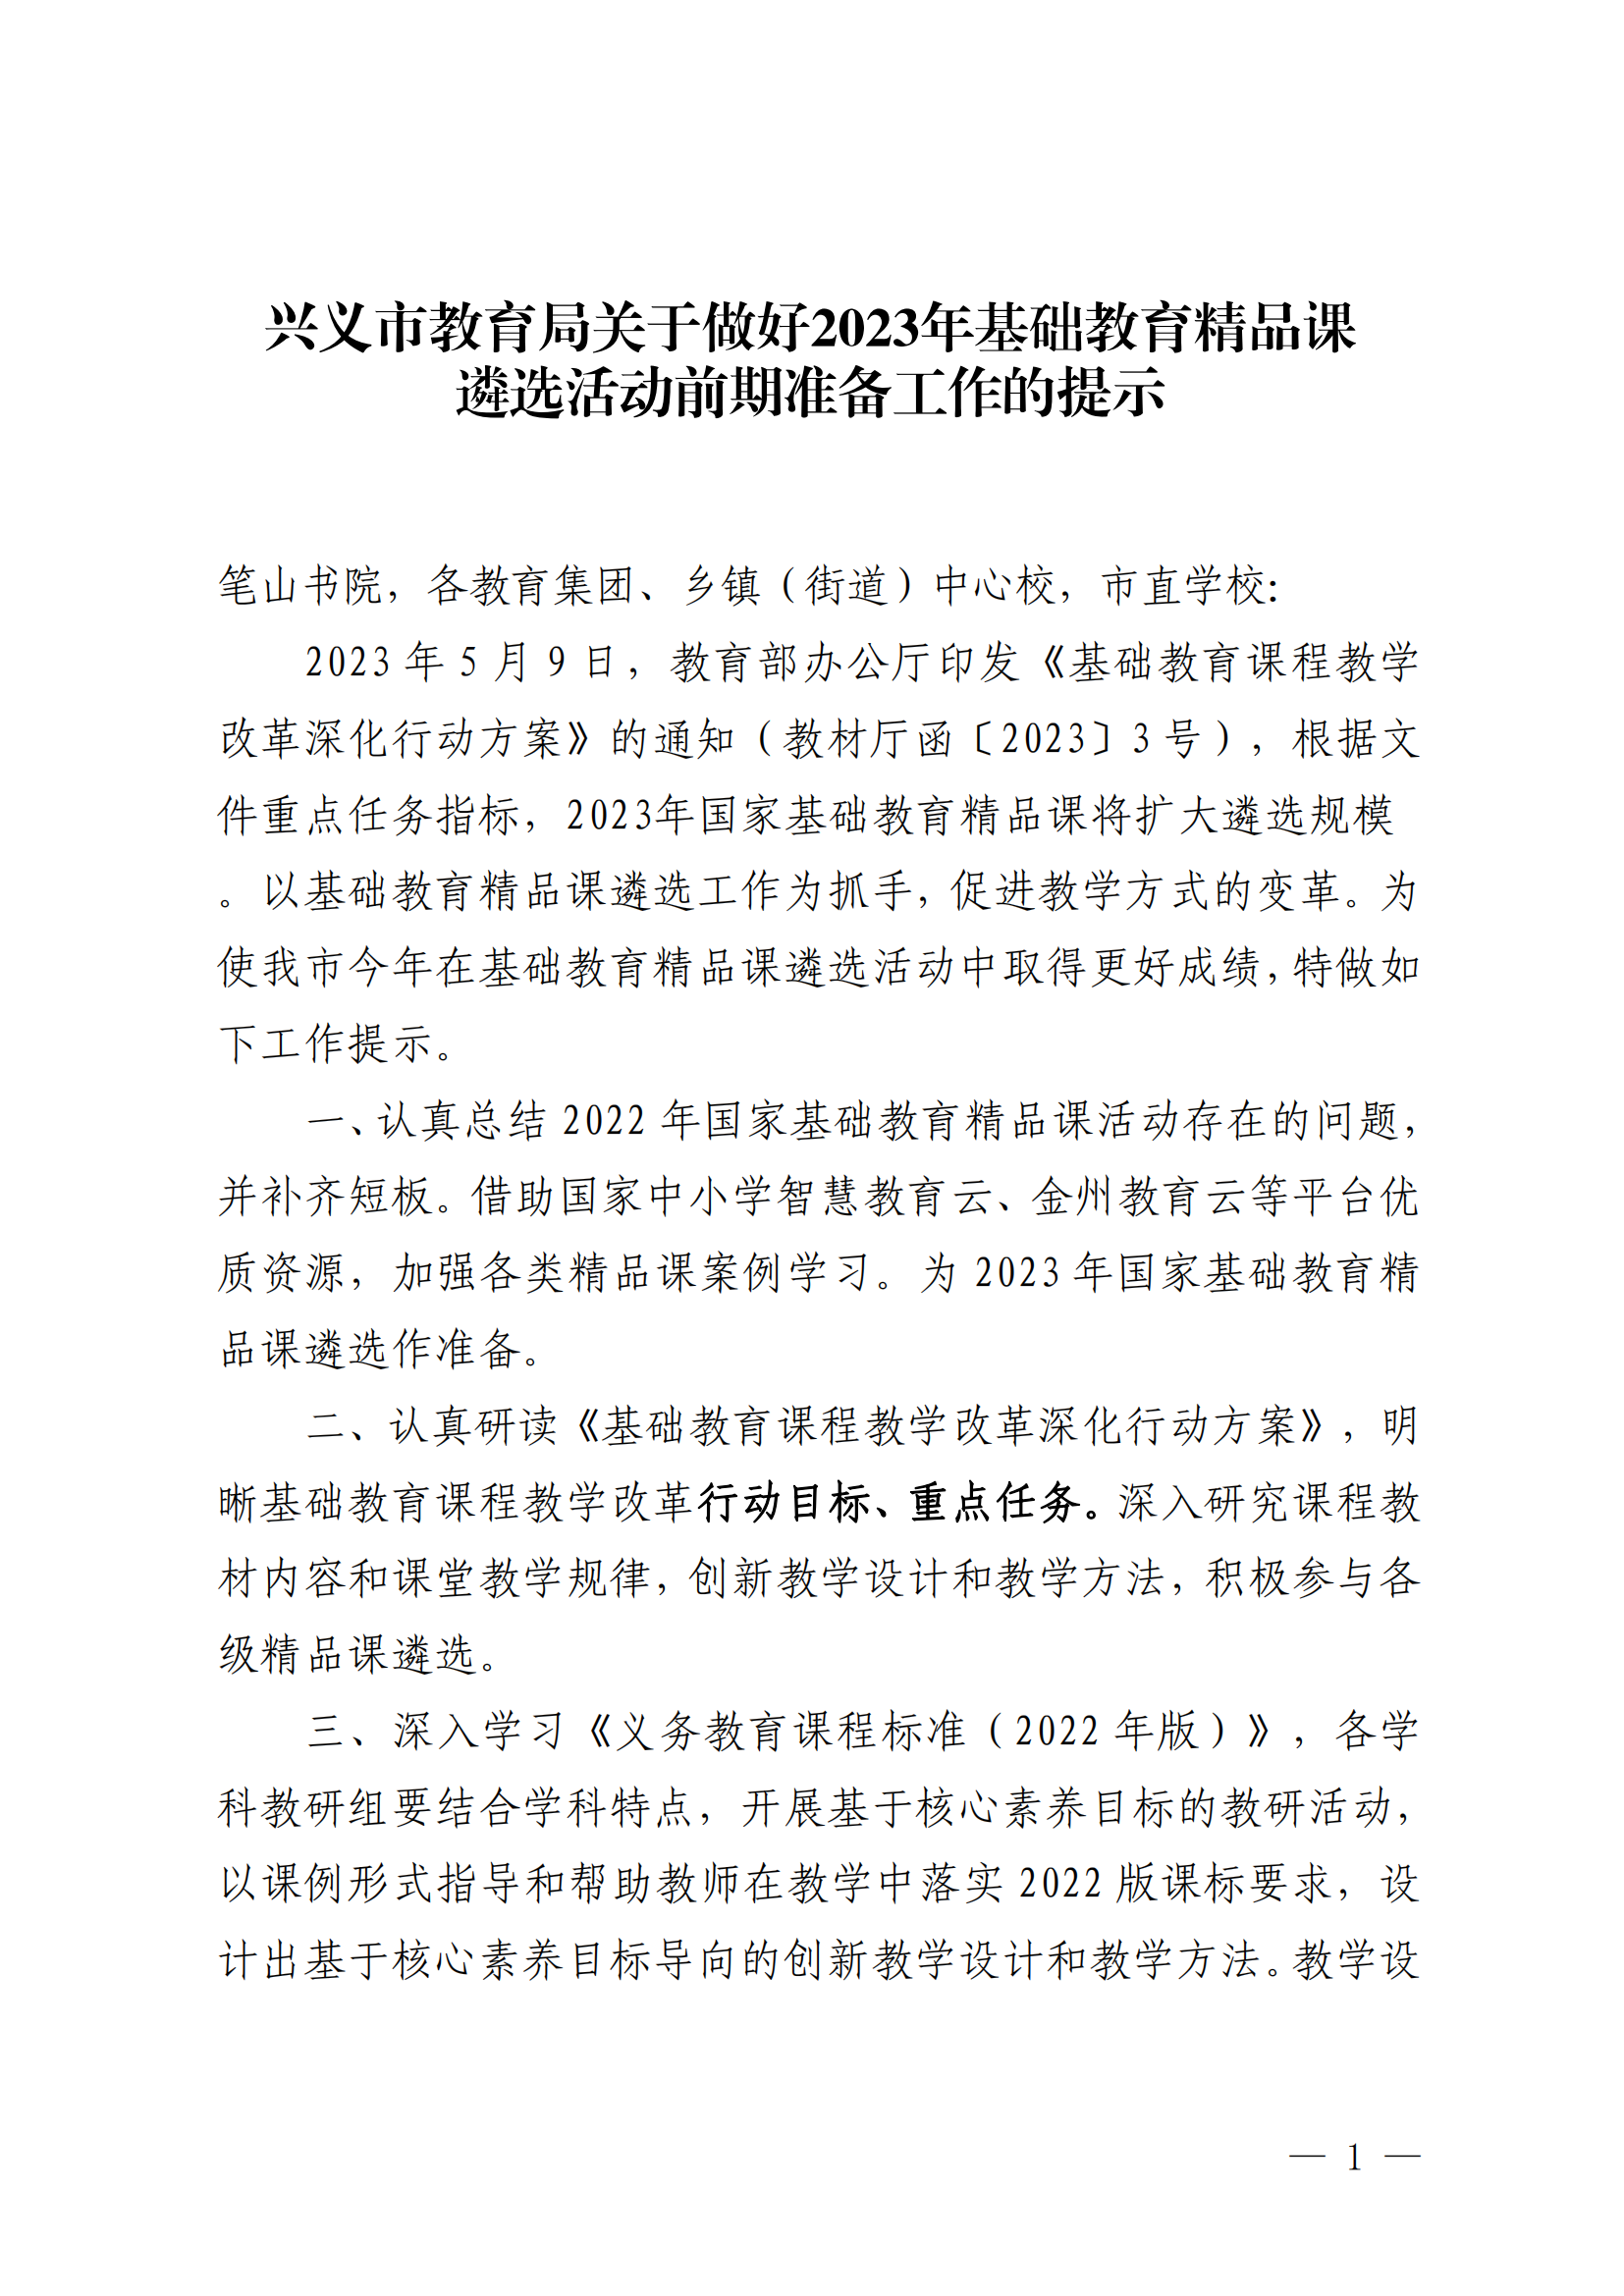 兴义市教育局关于做好2023年基础教育精品课遴选活动前期准备工作的提示_00.png